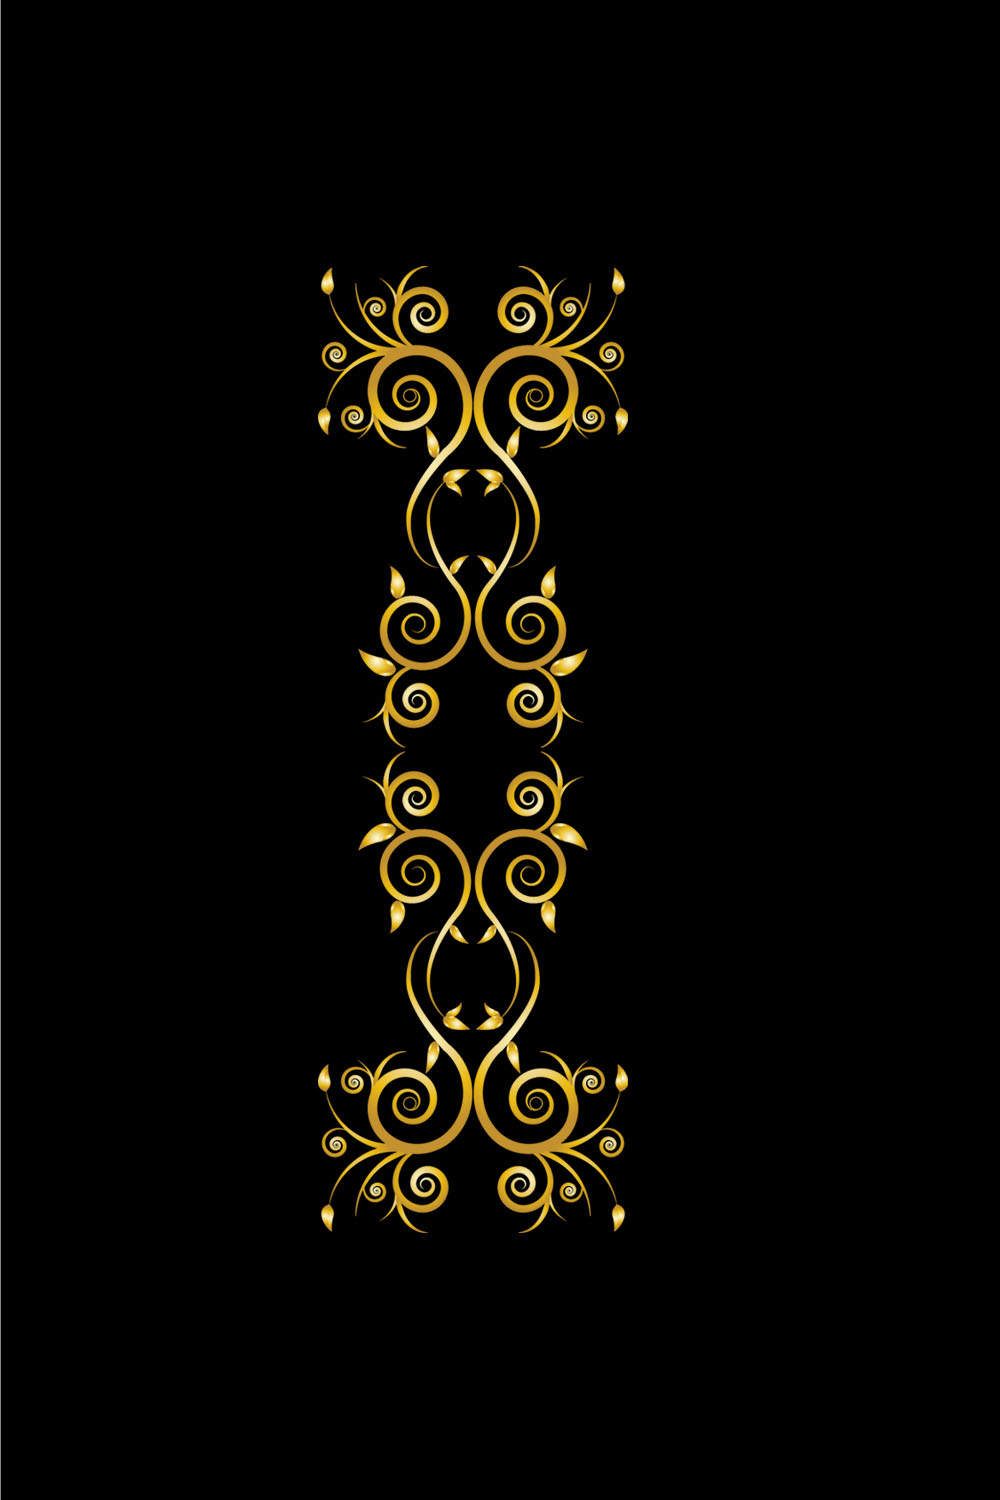 Floral Ornament Golden Design Vector on Black Color pinterest image.